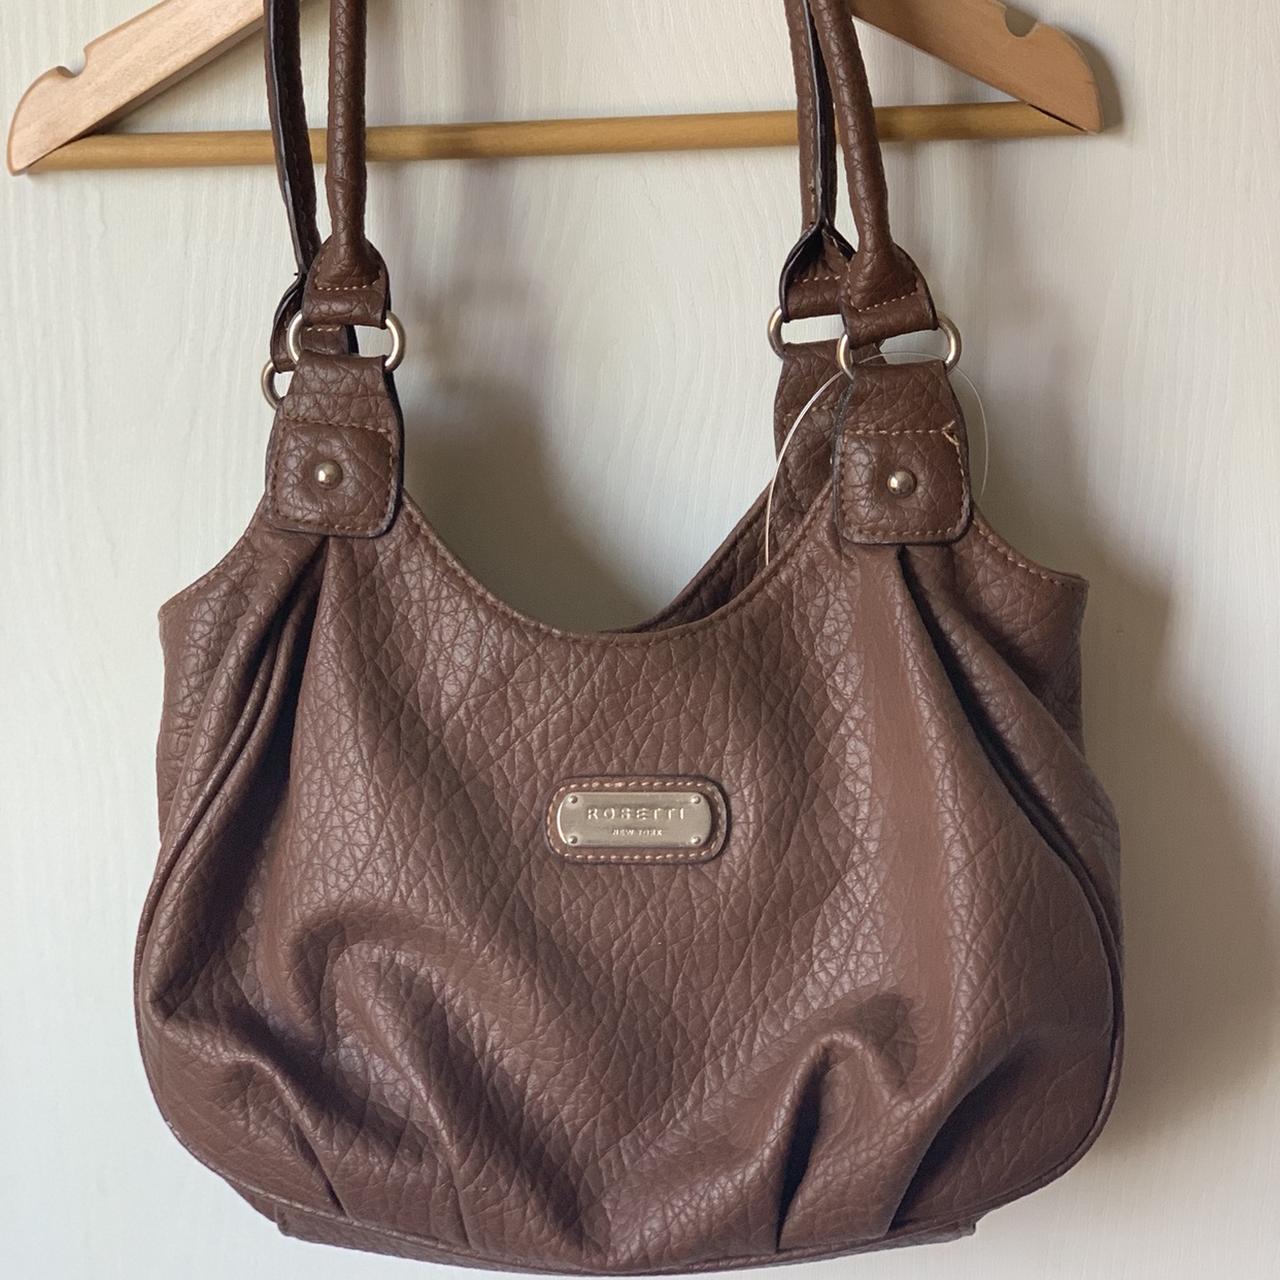 Rosetti Handbags